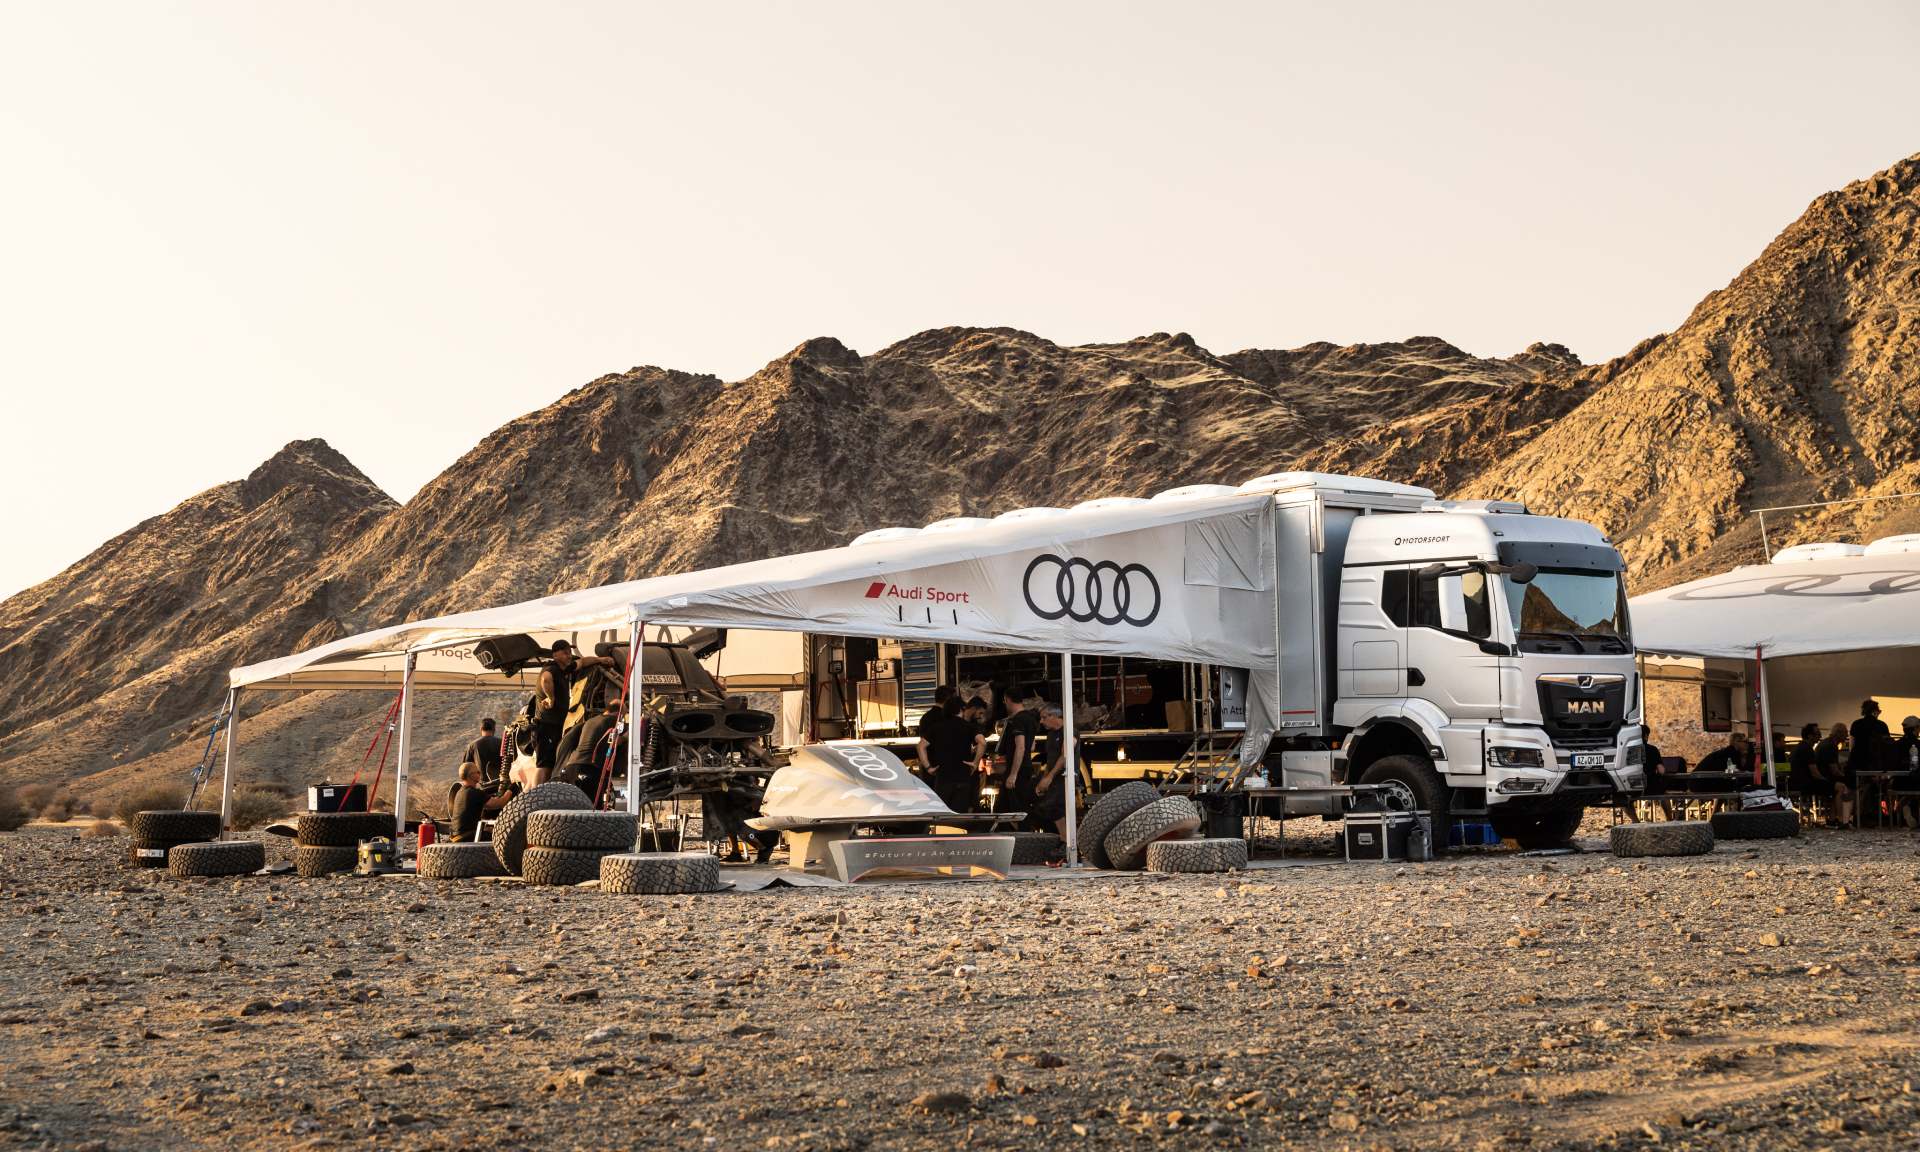  Neumáticos y vehículos en el campamento base de Audi durante la fase de pruebas en Arabia Saudita.